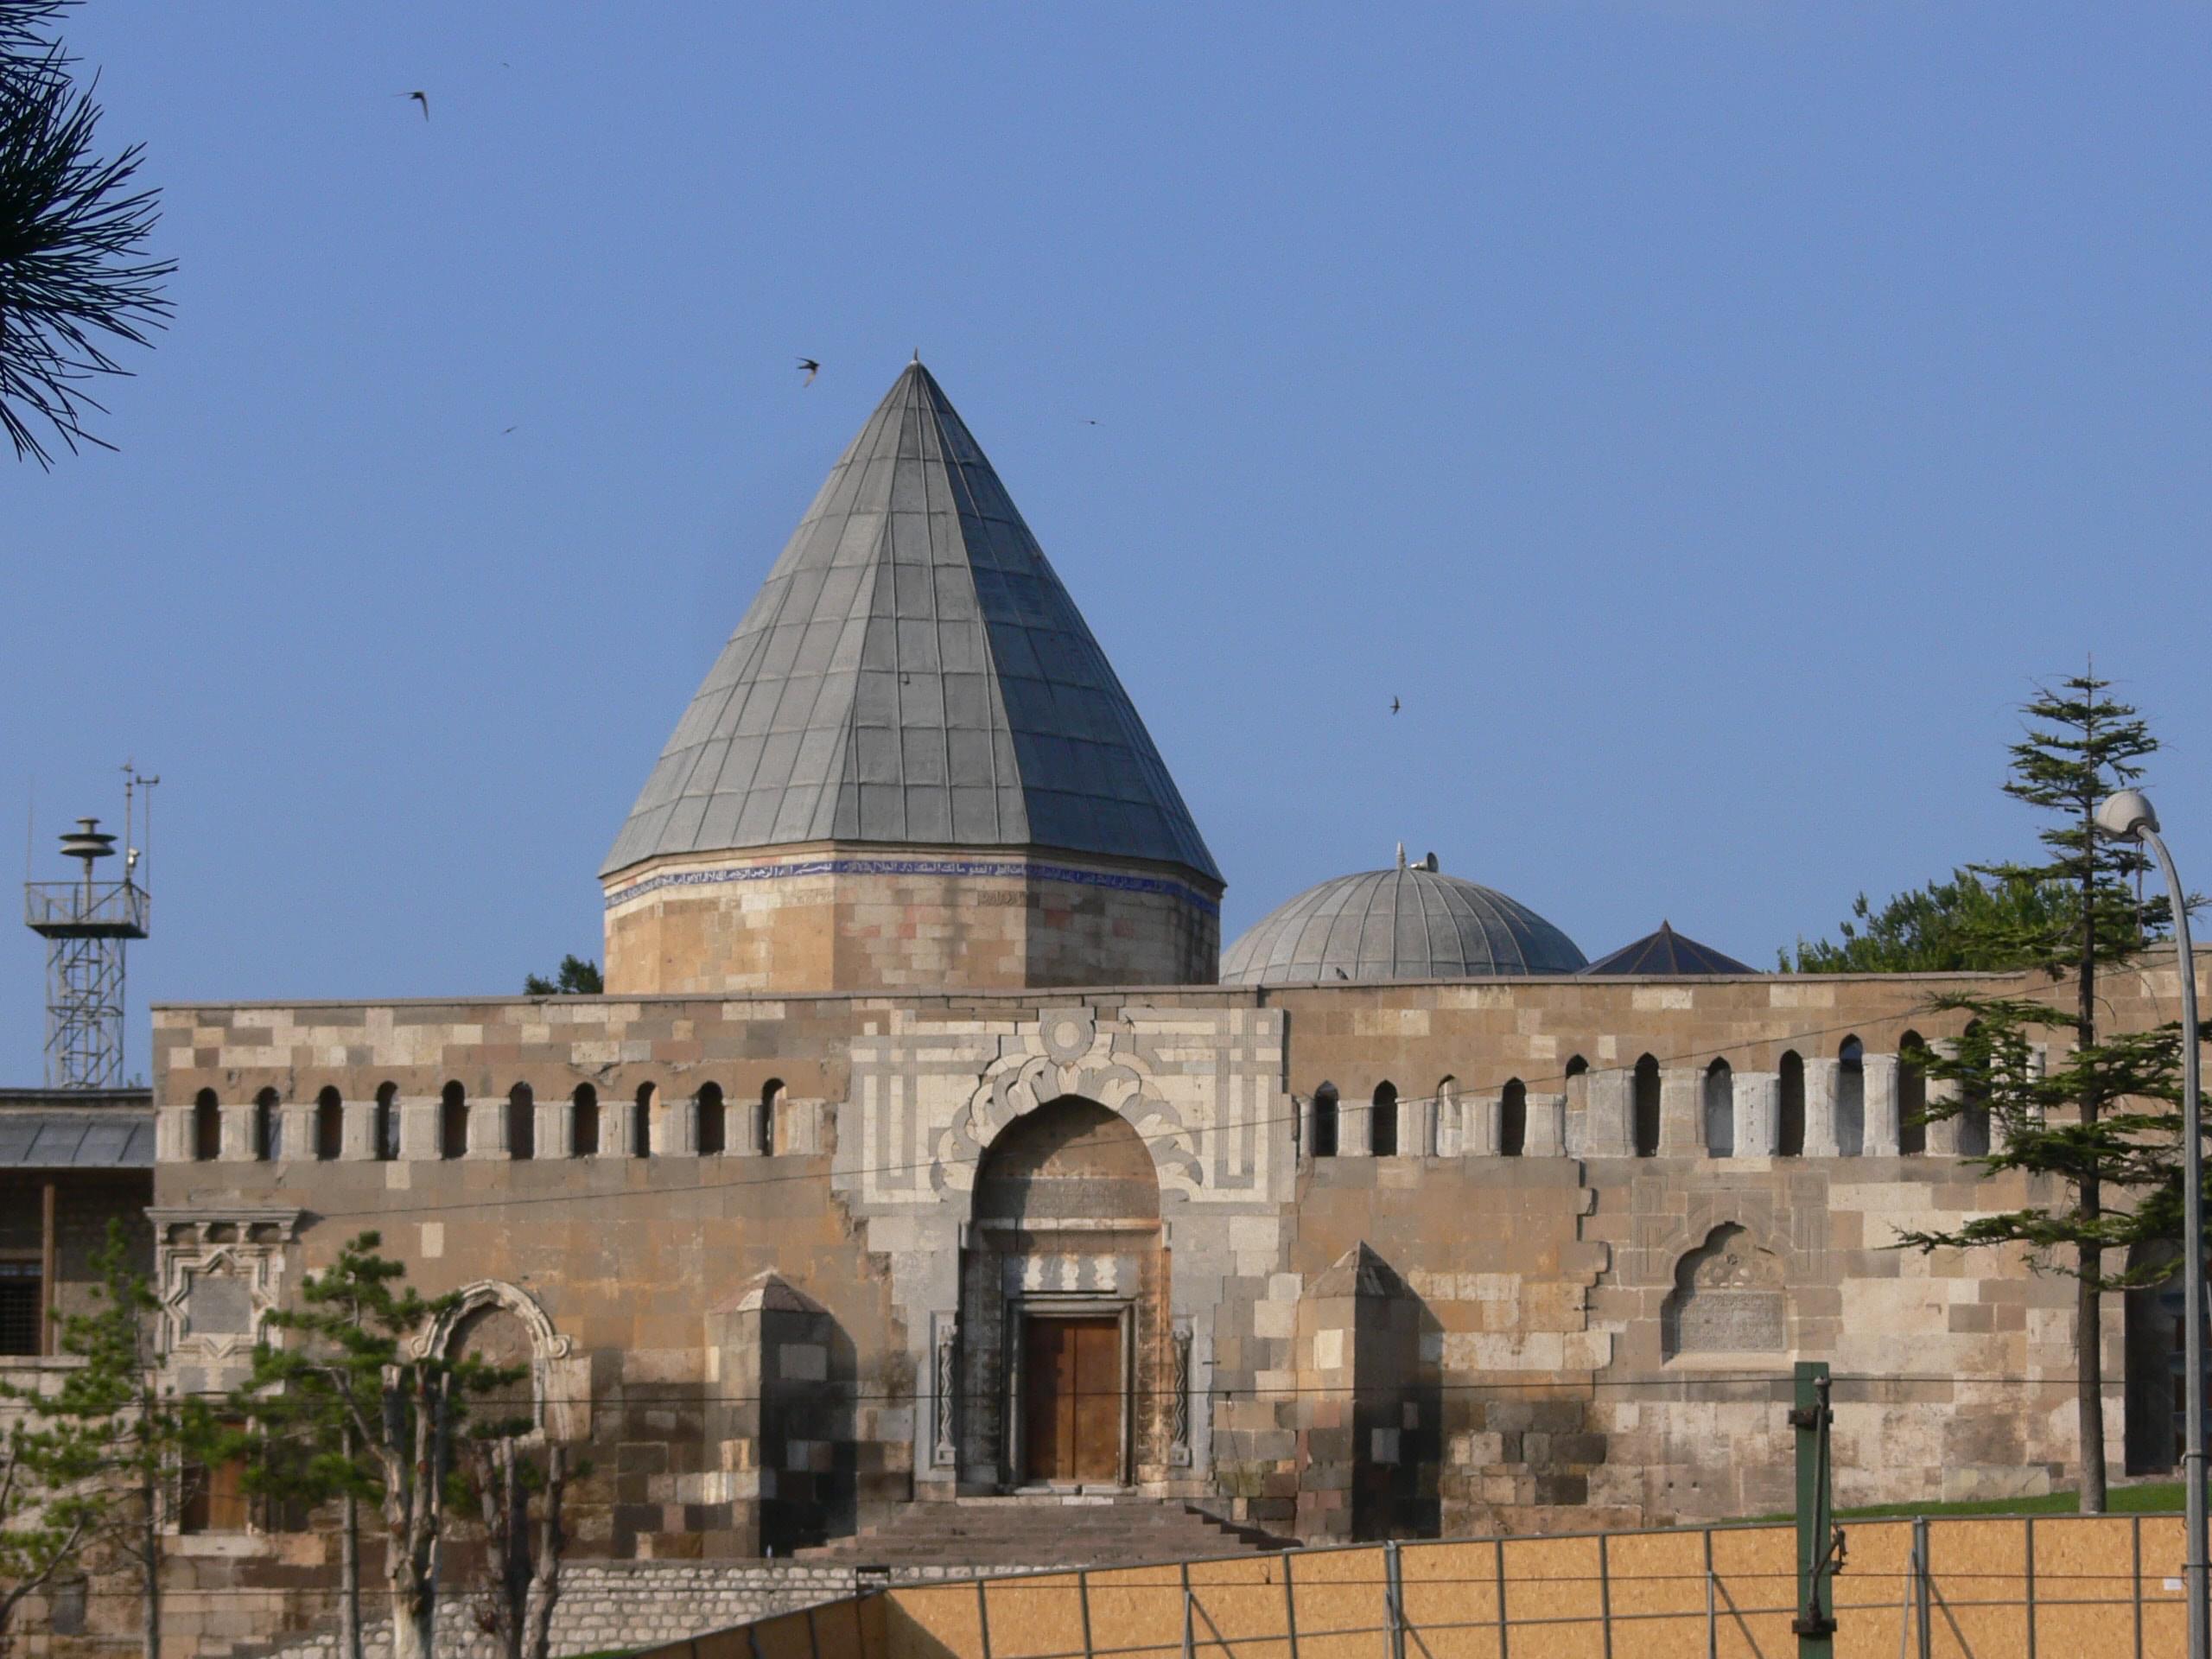 Visit the Sultan Alaeddin Mosque